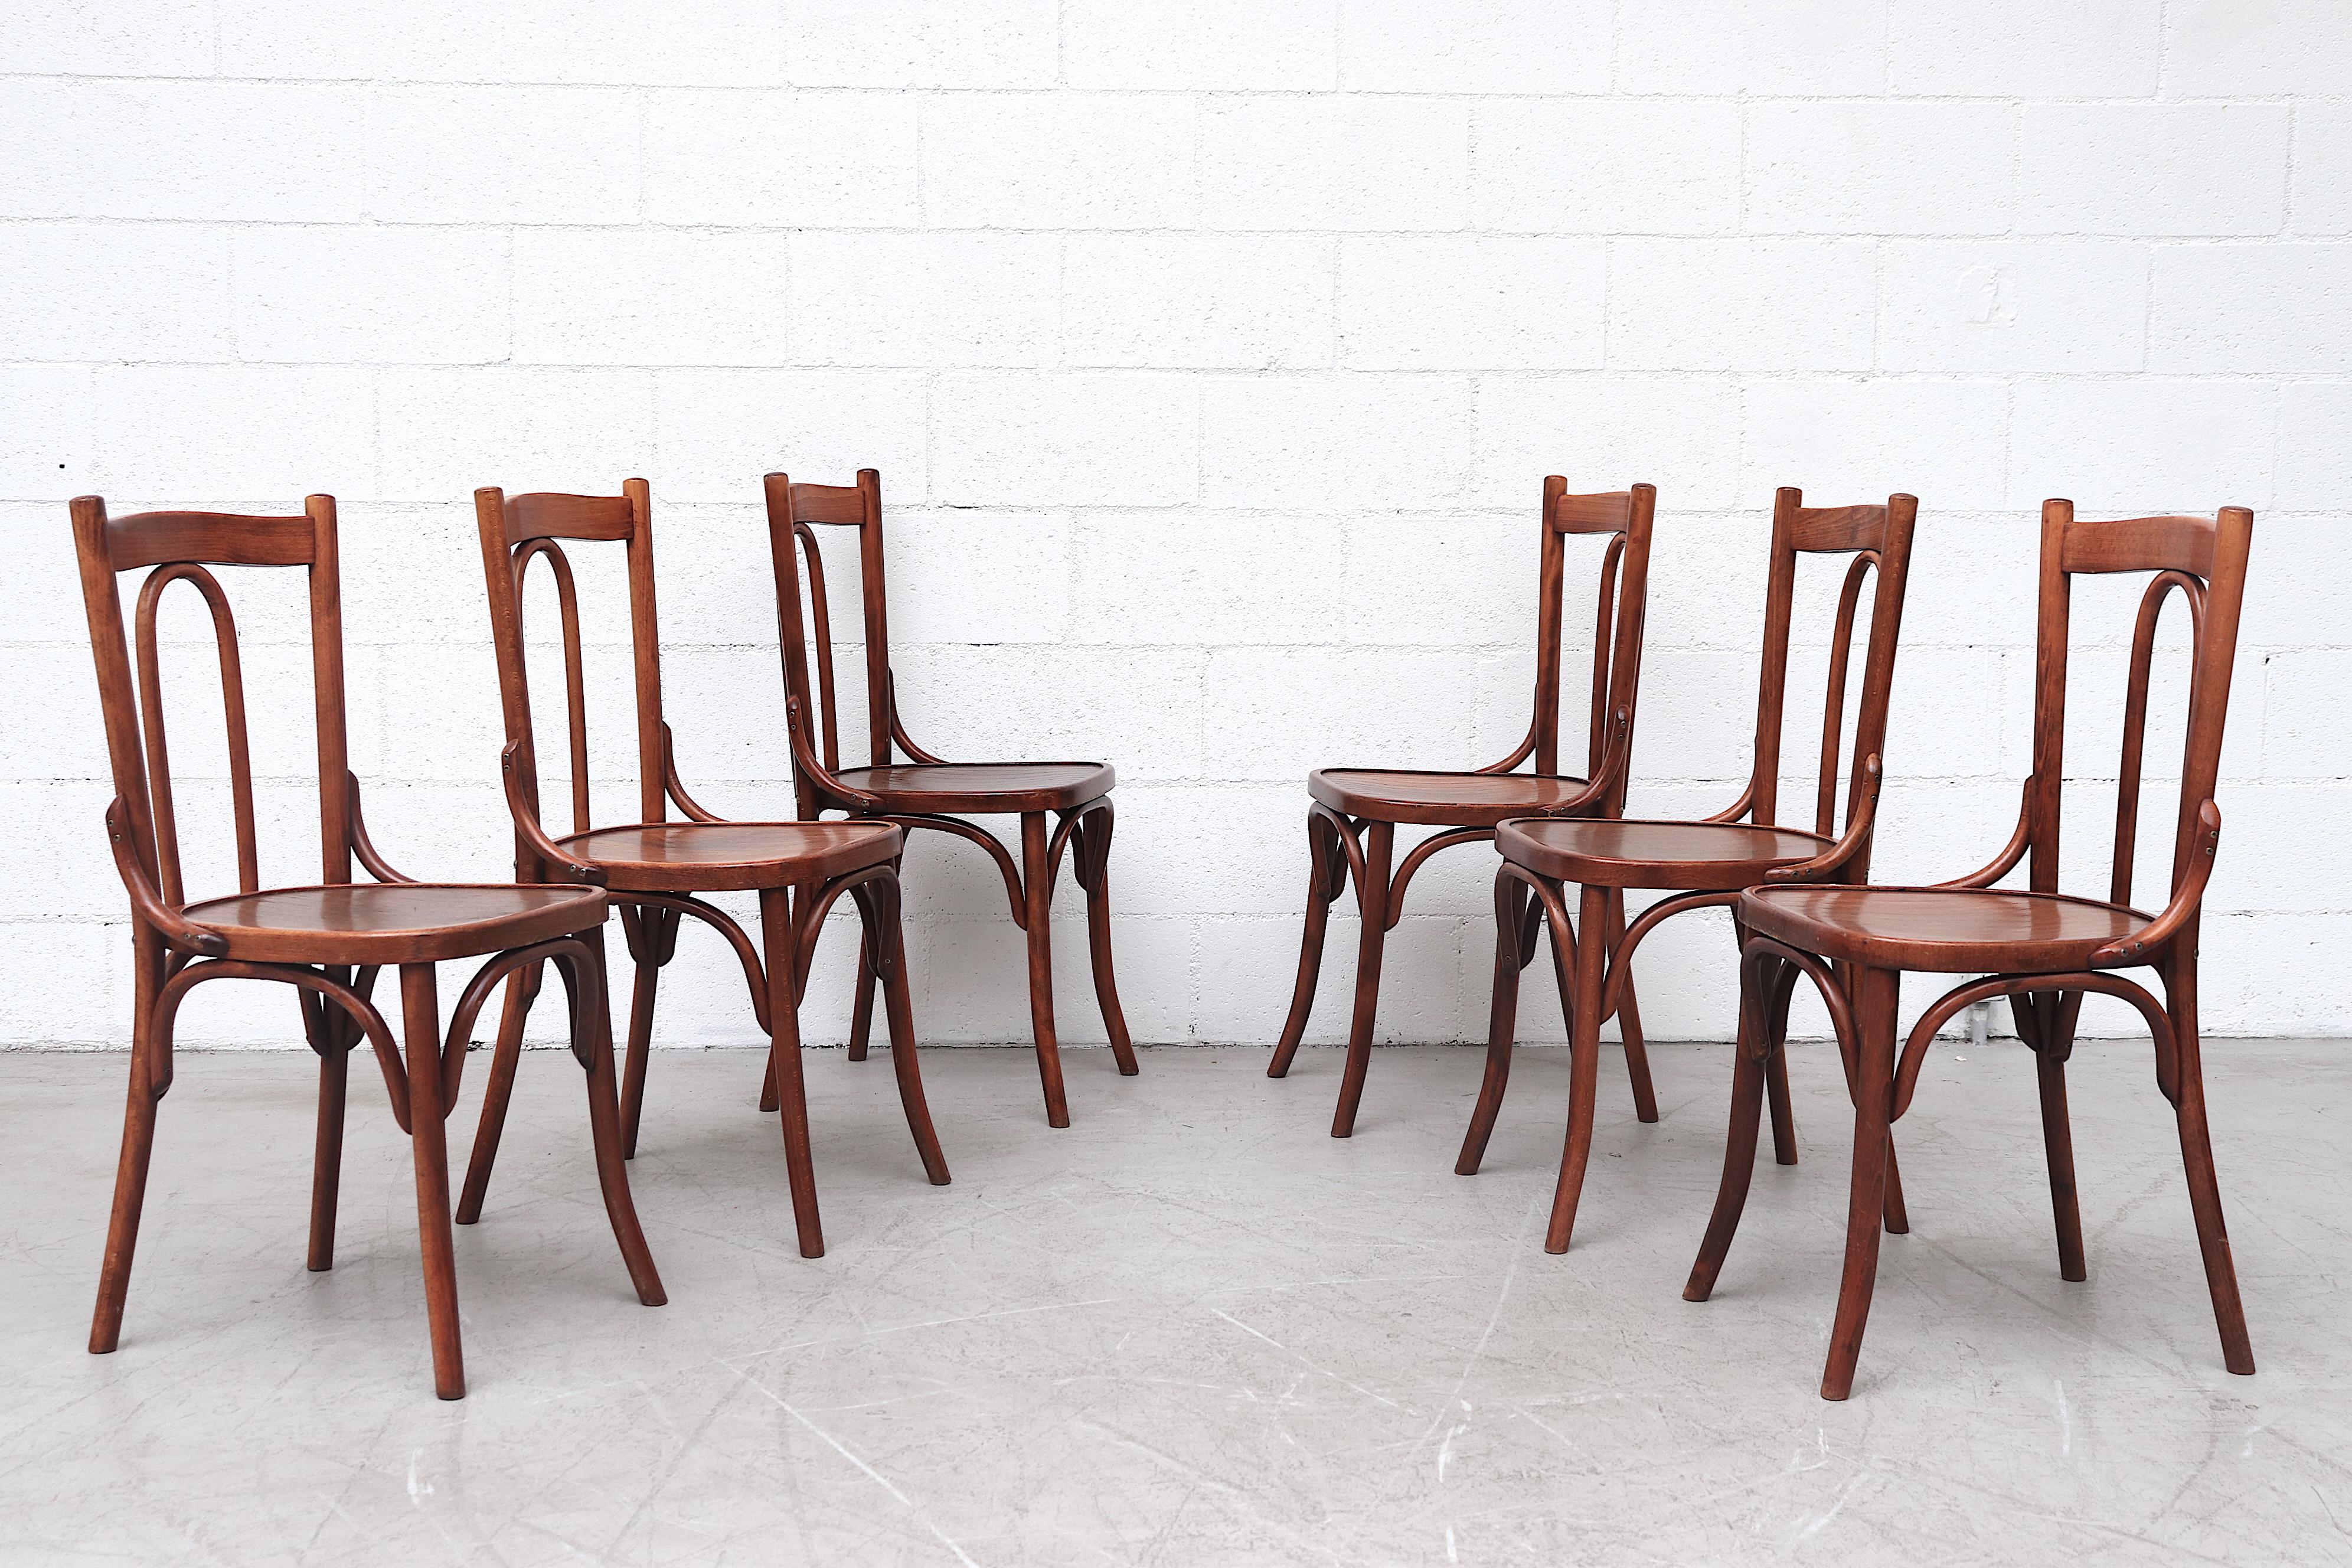 Hübsche Bistro-Stühle im Thonet-Stil mit gebogenem Rahmen aus Bugholz. Insgesamt guter Zustand mit normaler Abnutzung im Einklang mit Alter und Gebrauch. Die Farbe kann von Stuhl zu Stuhl leicht variieren. Individuelle Preisgestaltung.